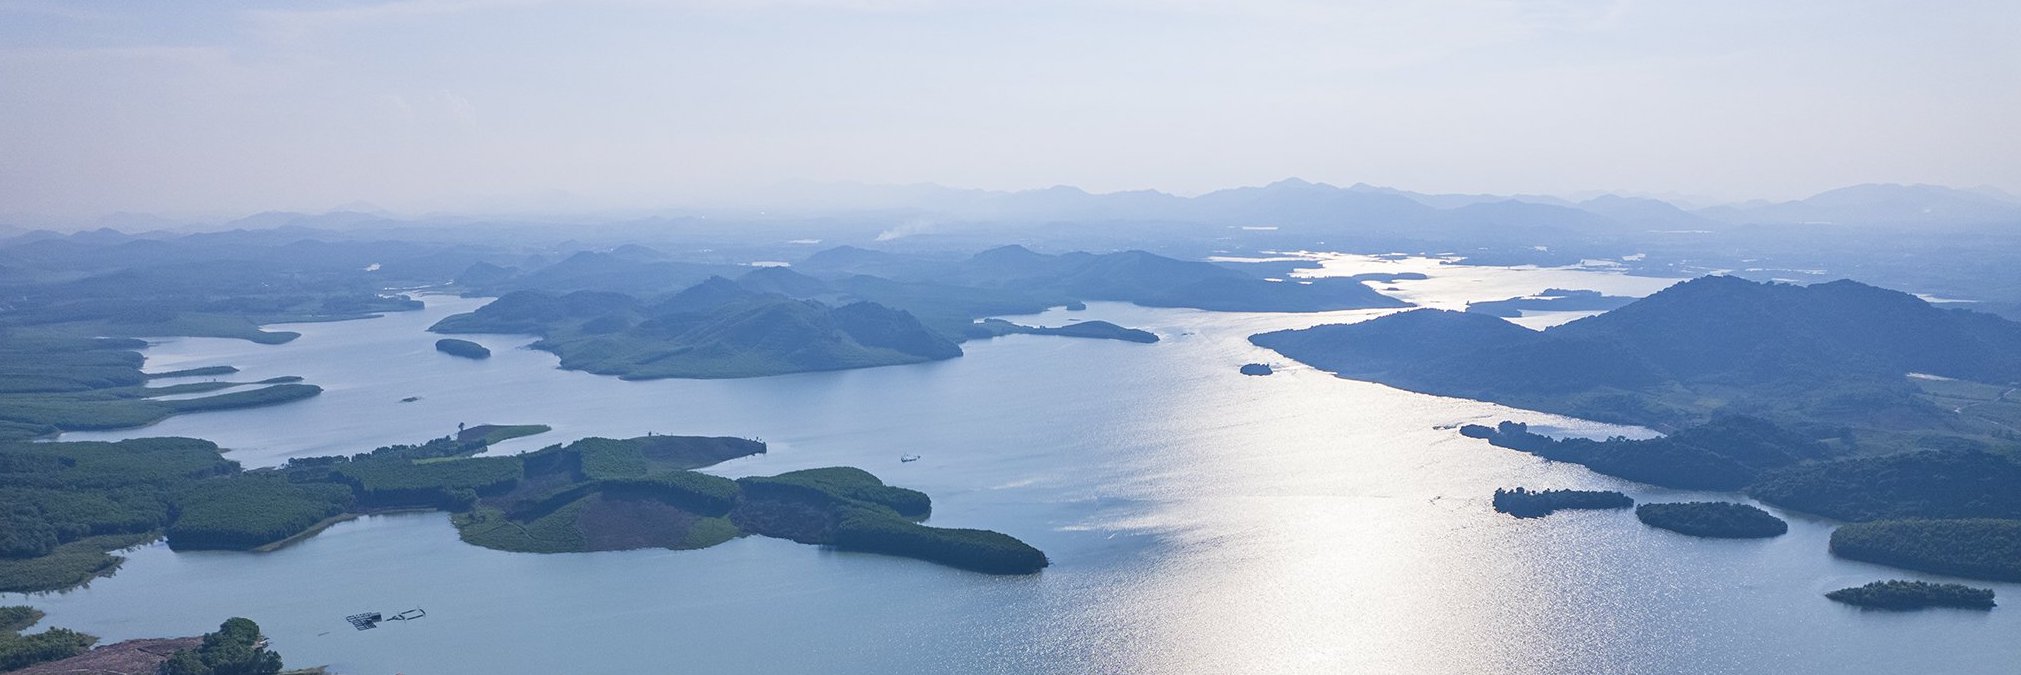 Hồ Vực Mấu nhìn từ trên cao. Ảnh: Hồ Đình Chiến